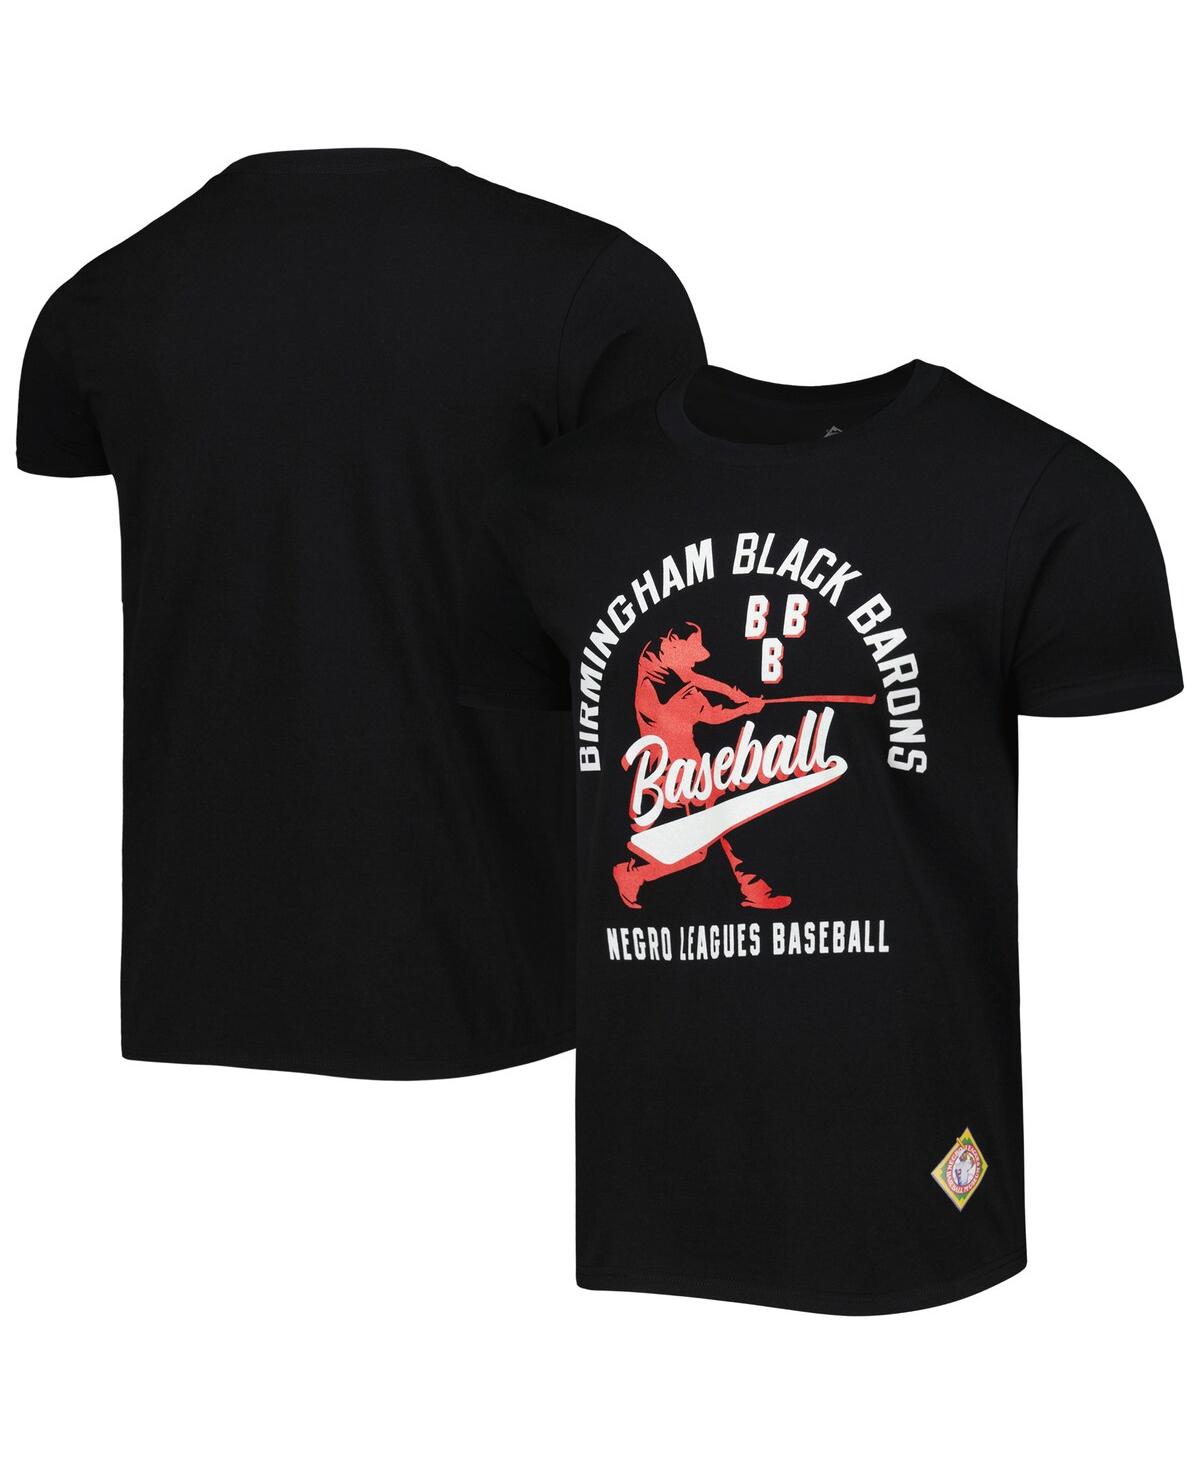 Shop Stitches Men's  Black Birmingham Black Barons Soft Style T-shirt